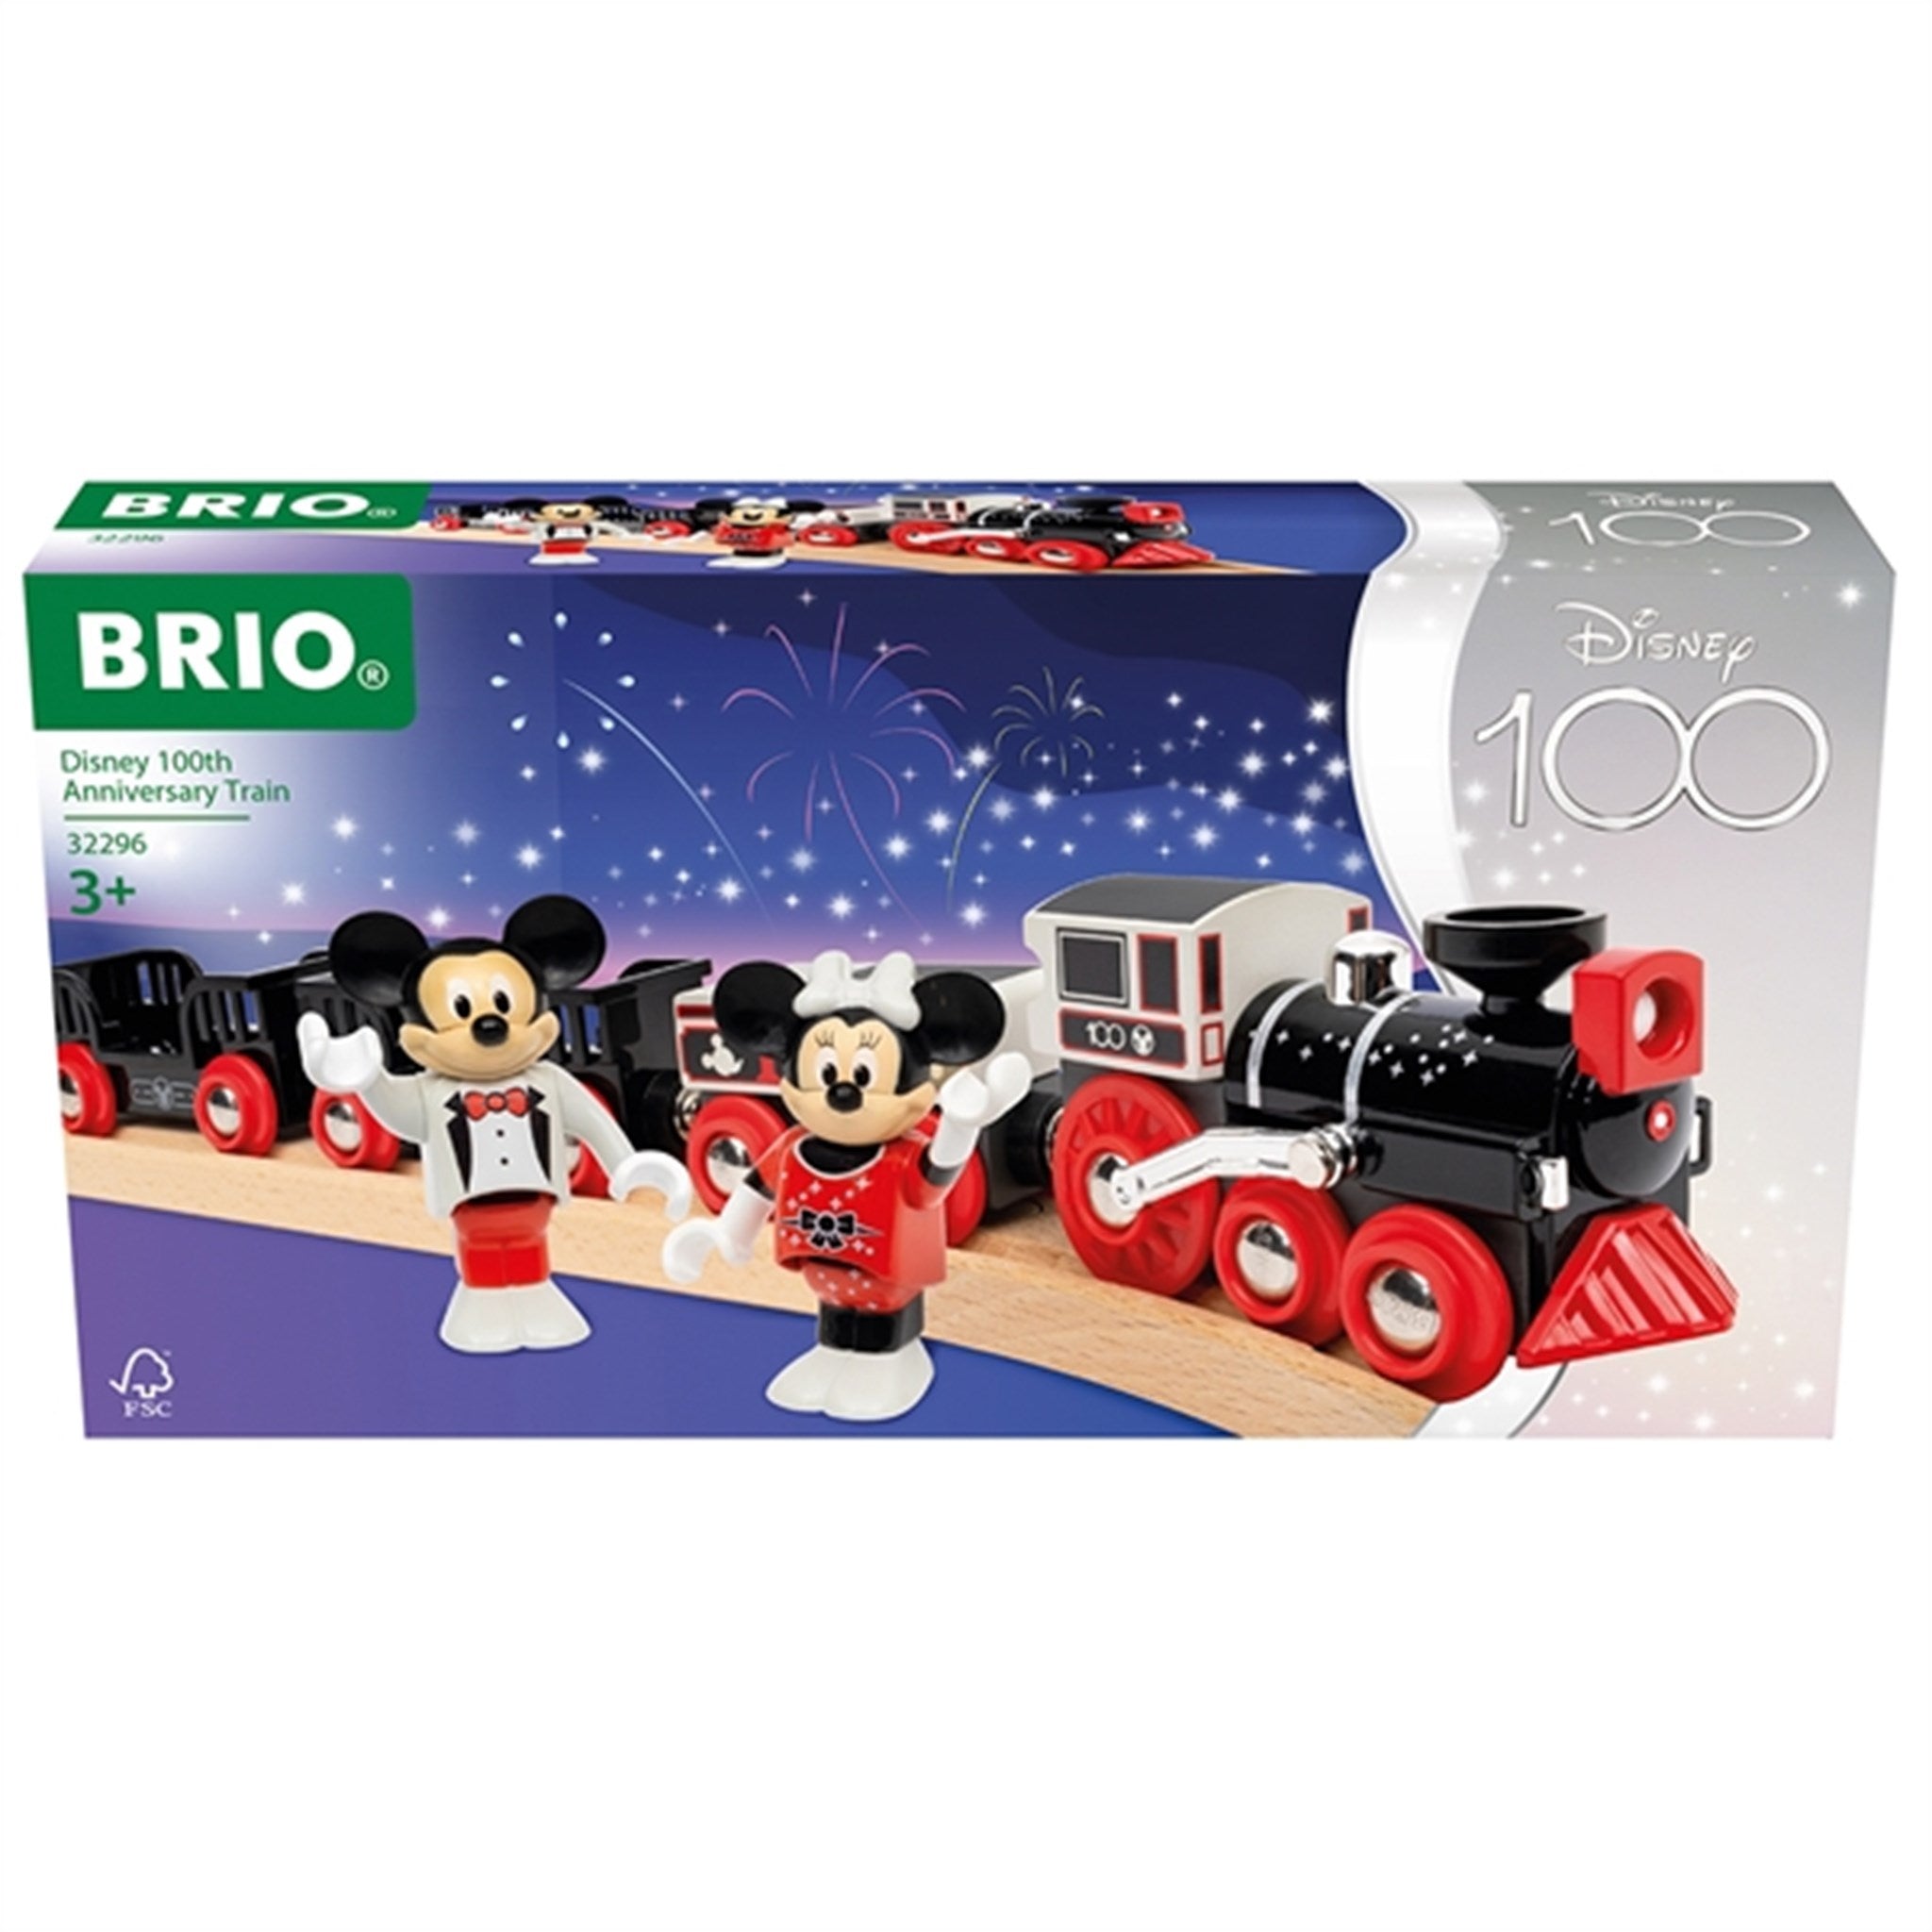 BRIO® Disney 100th Anniversary Train 2